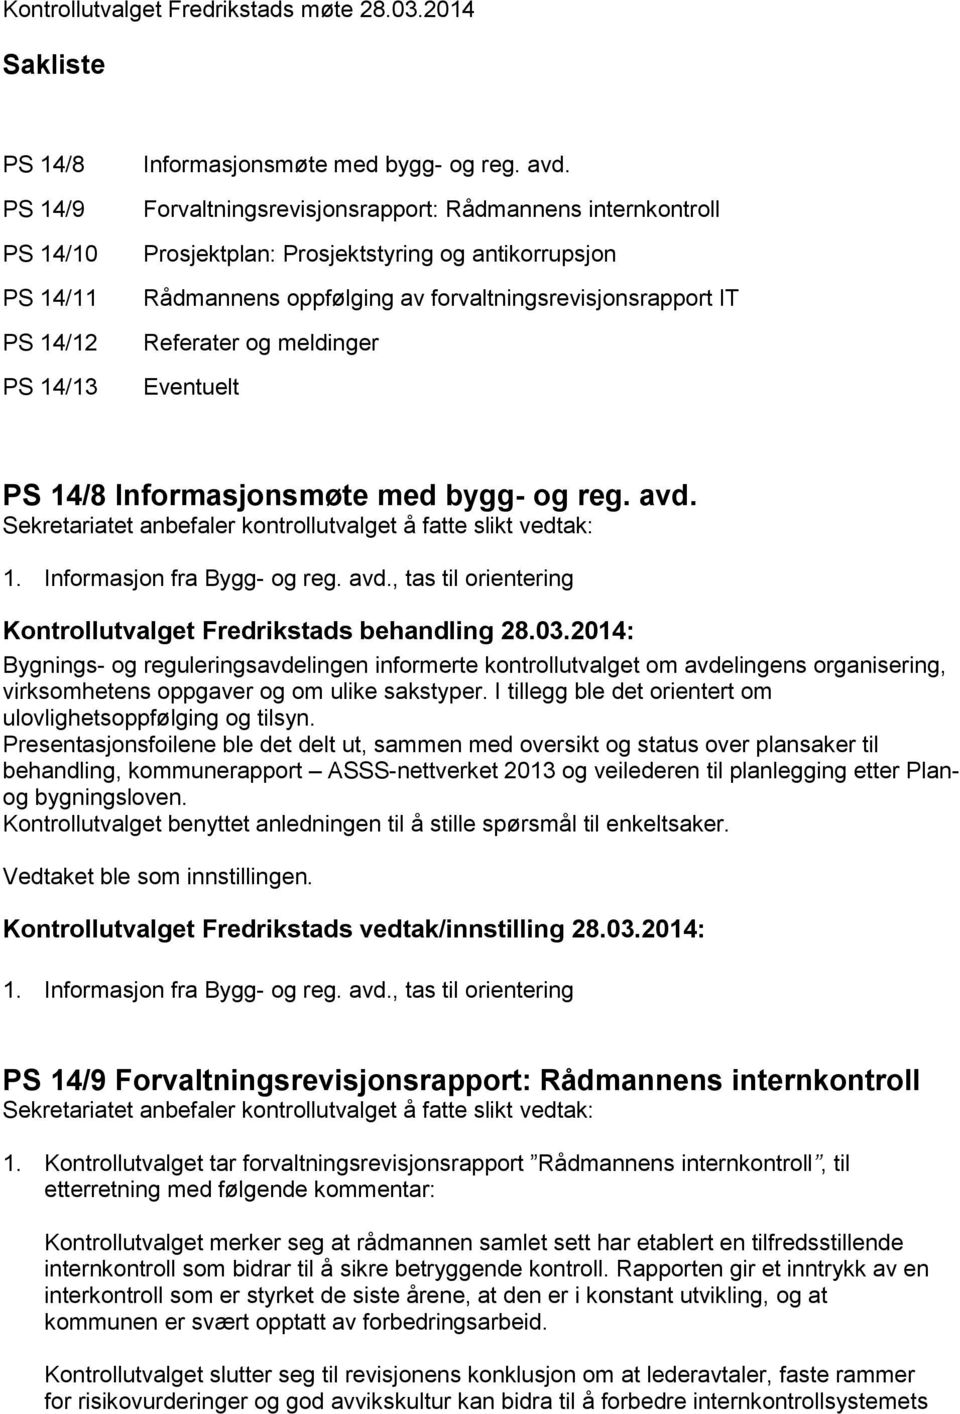 14/8 Informasjonsmøte med bygg- og reg. avd.